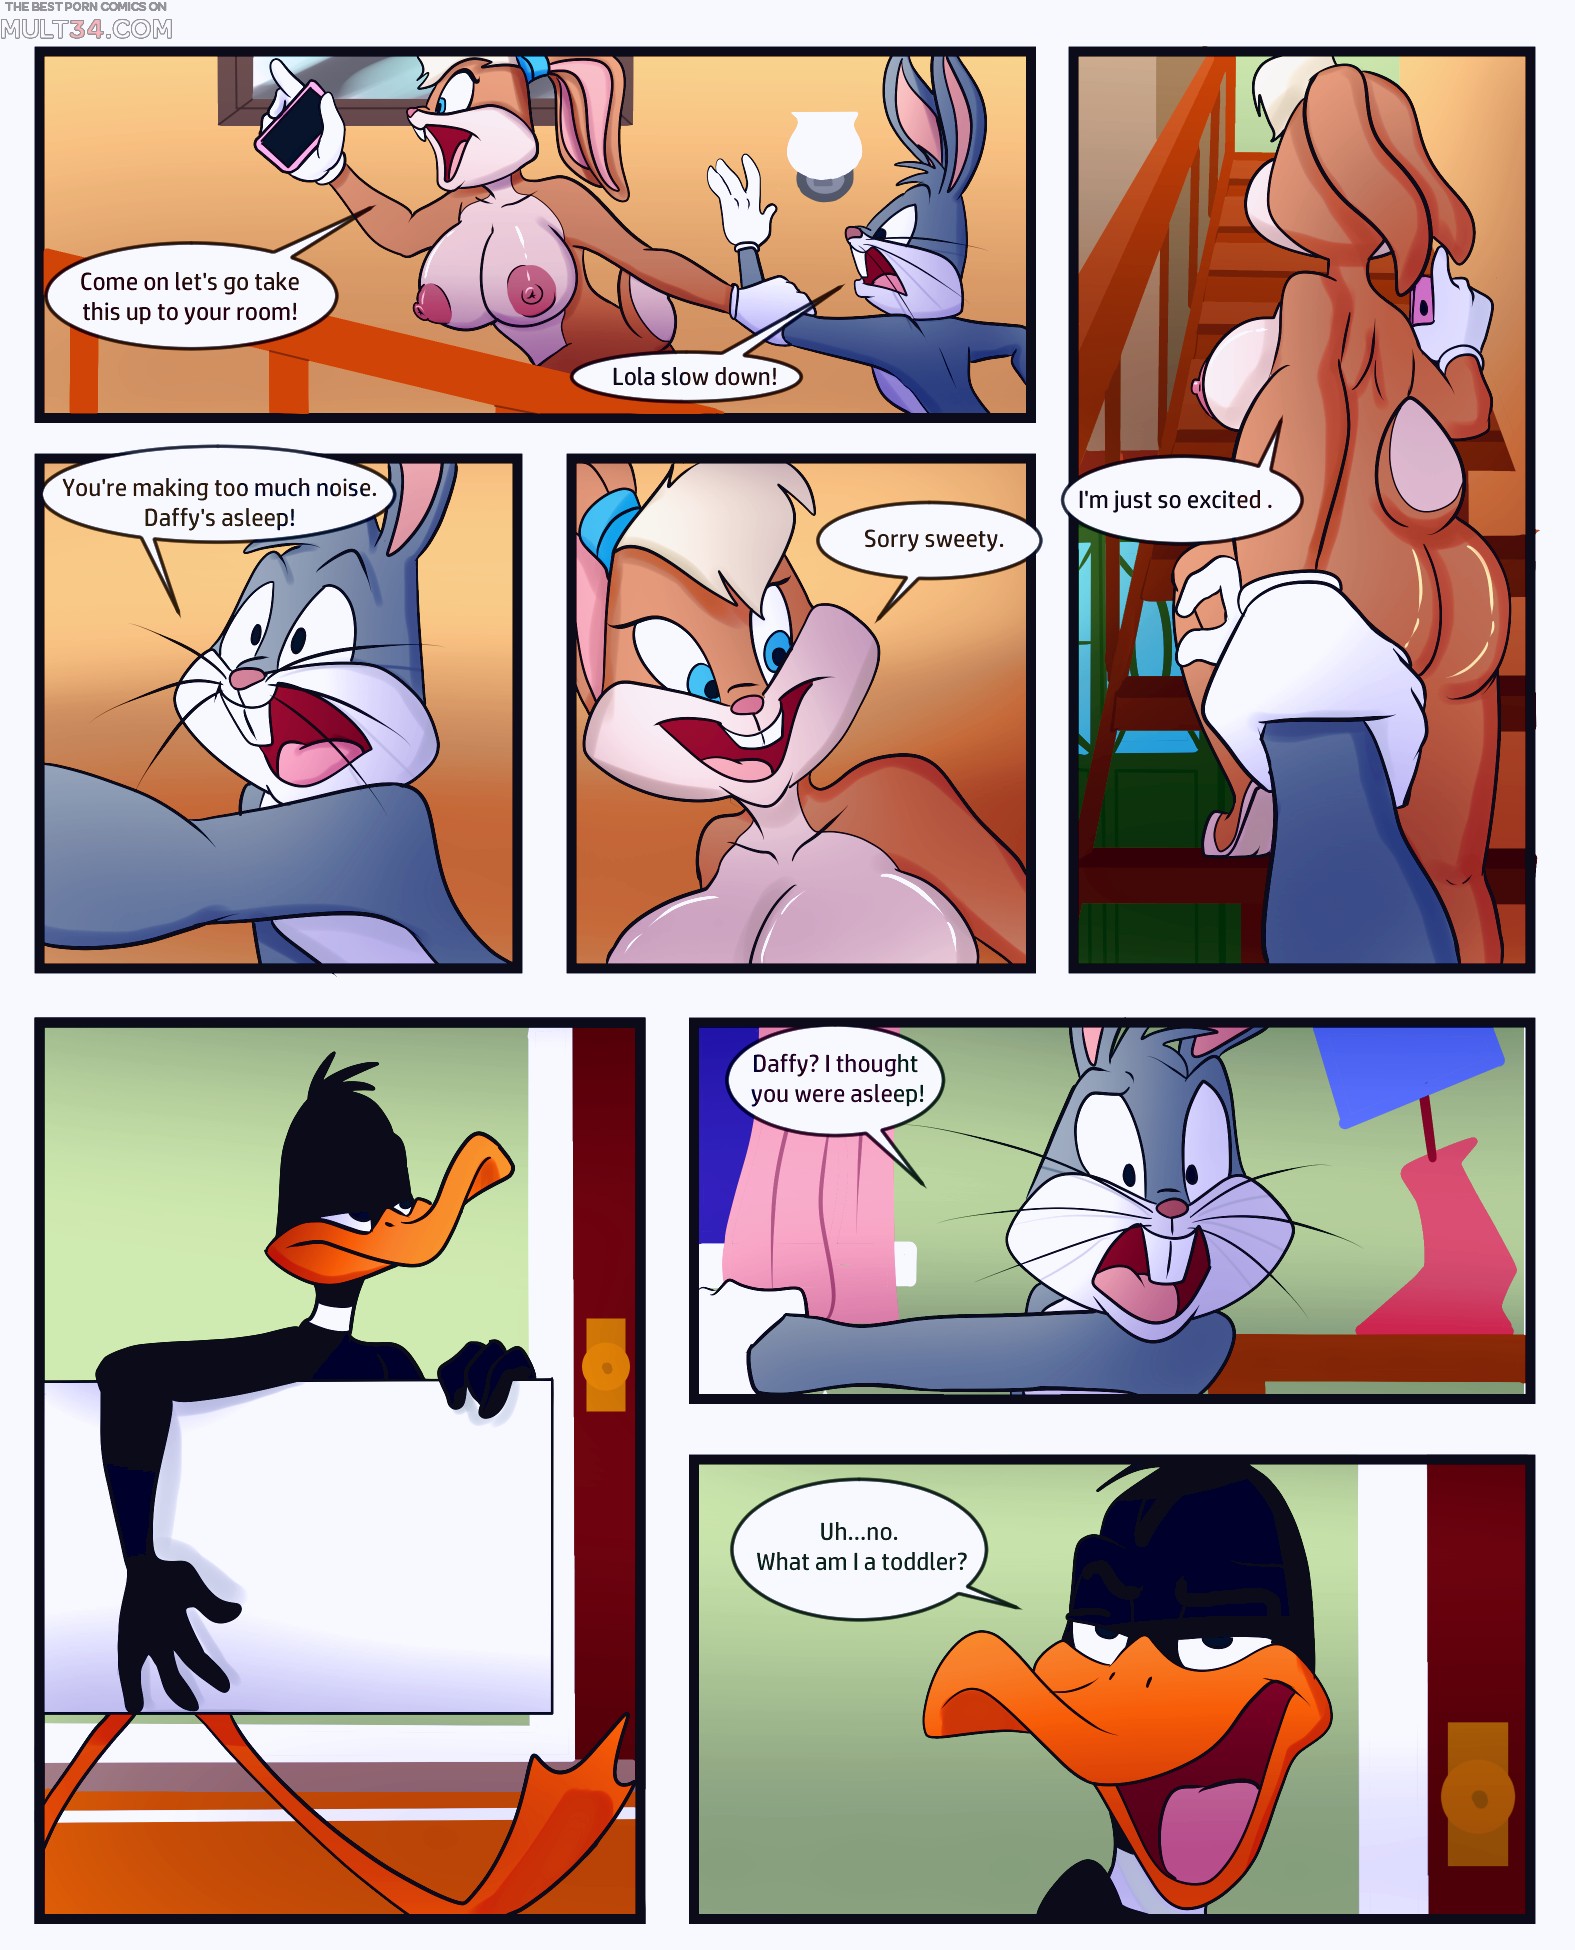 Lola Bunny Porn Comic - Lolas Noods porn comic - the best cartoon porn comics, Rule 34 | MULT34